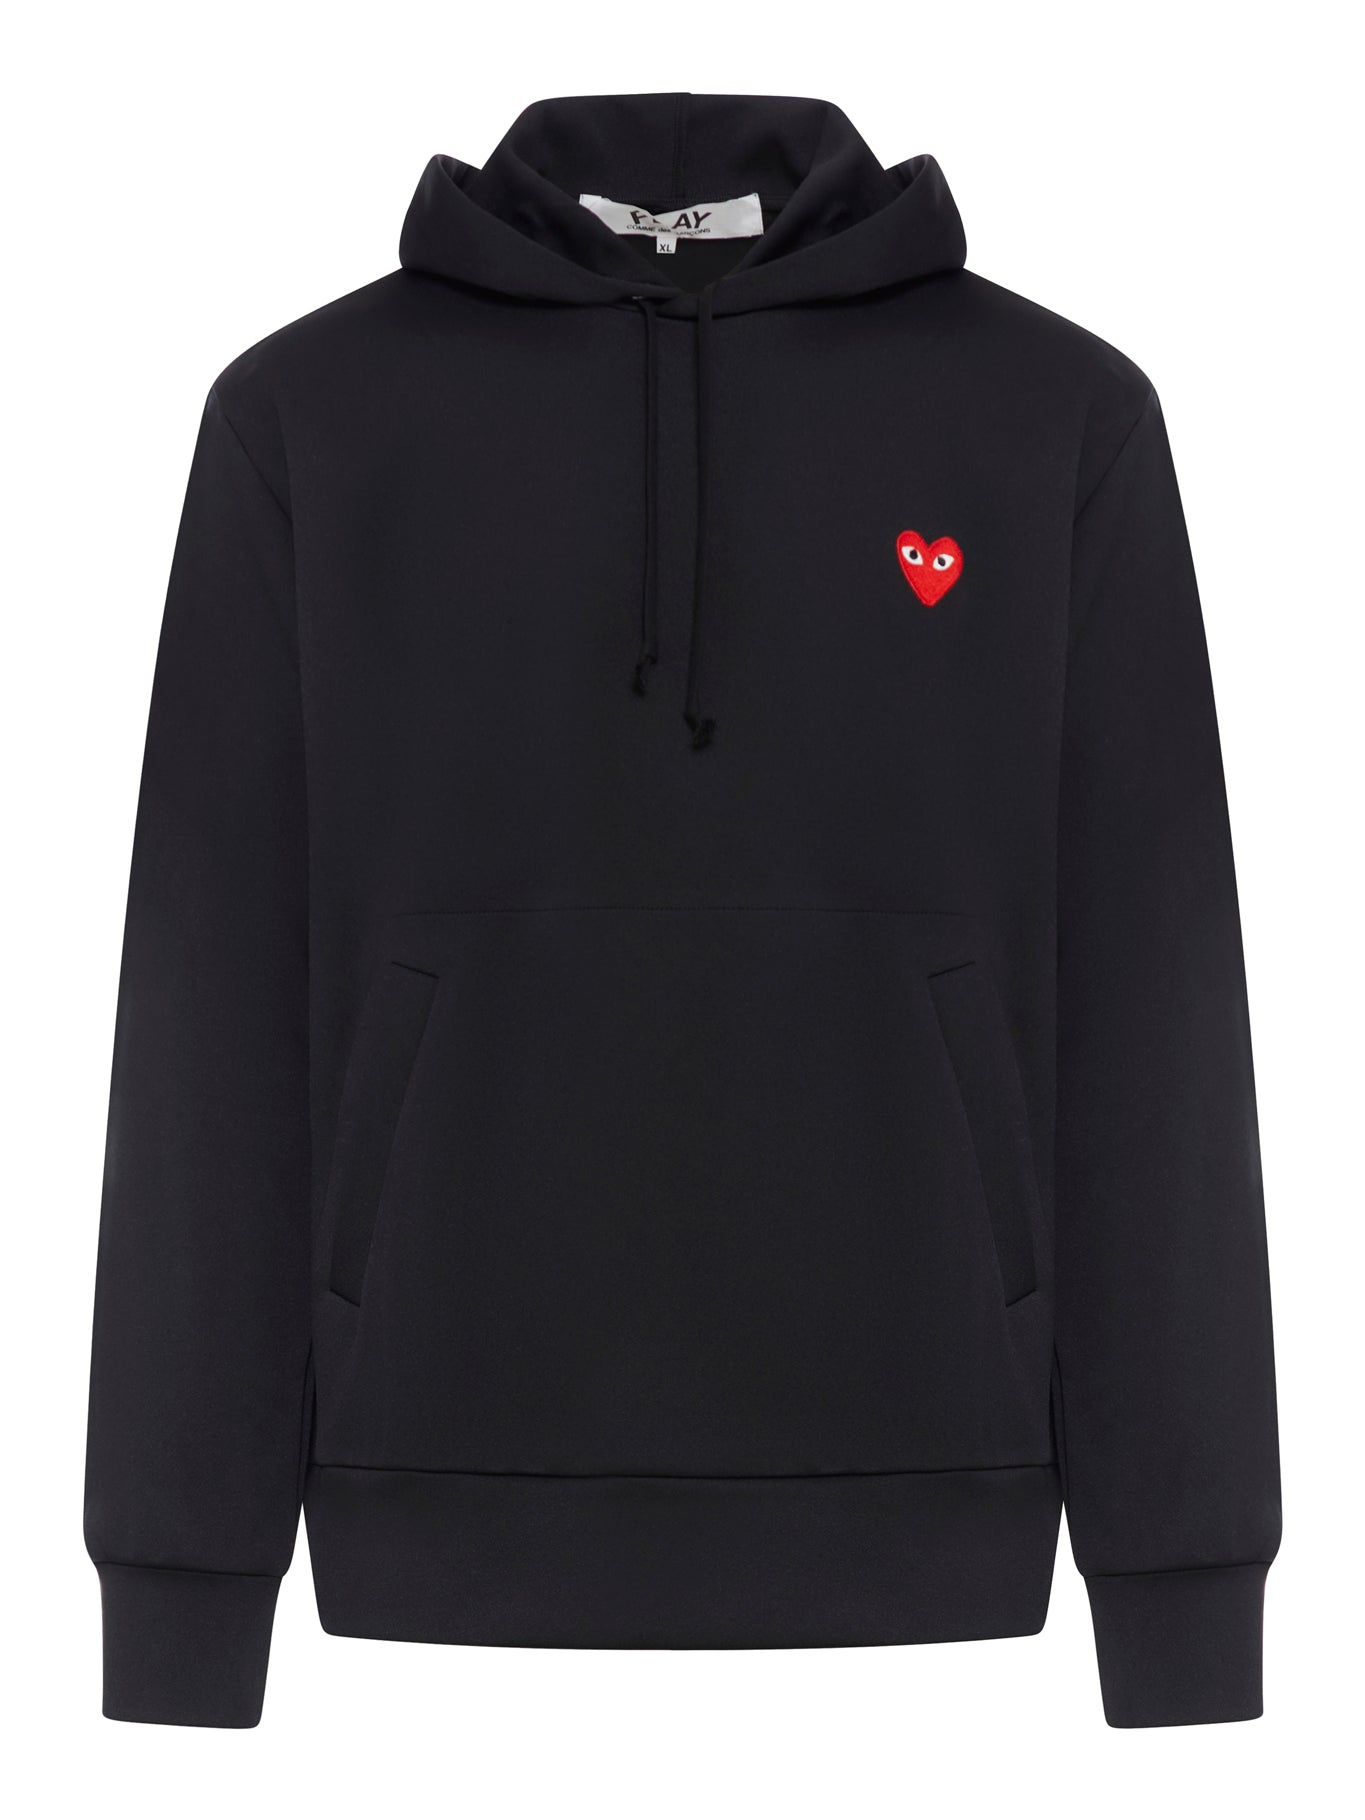 heart appliqué hoodie